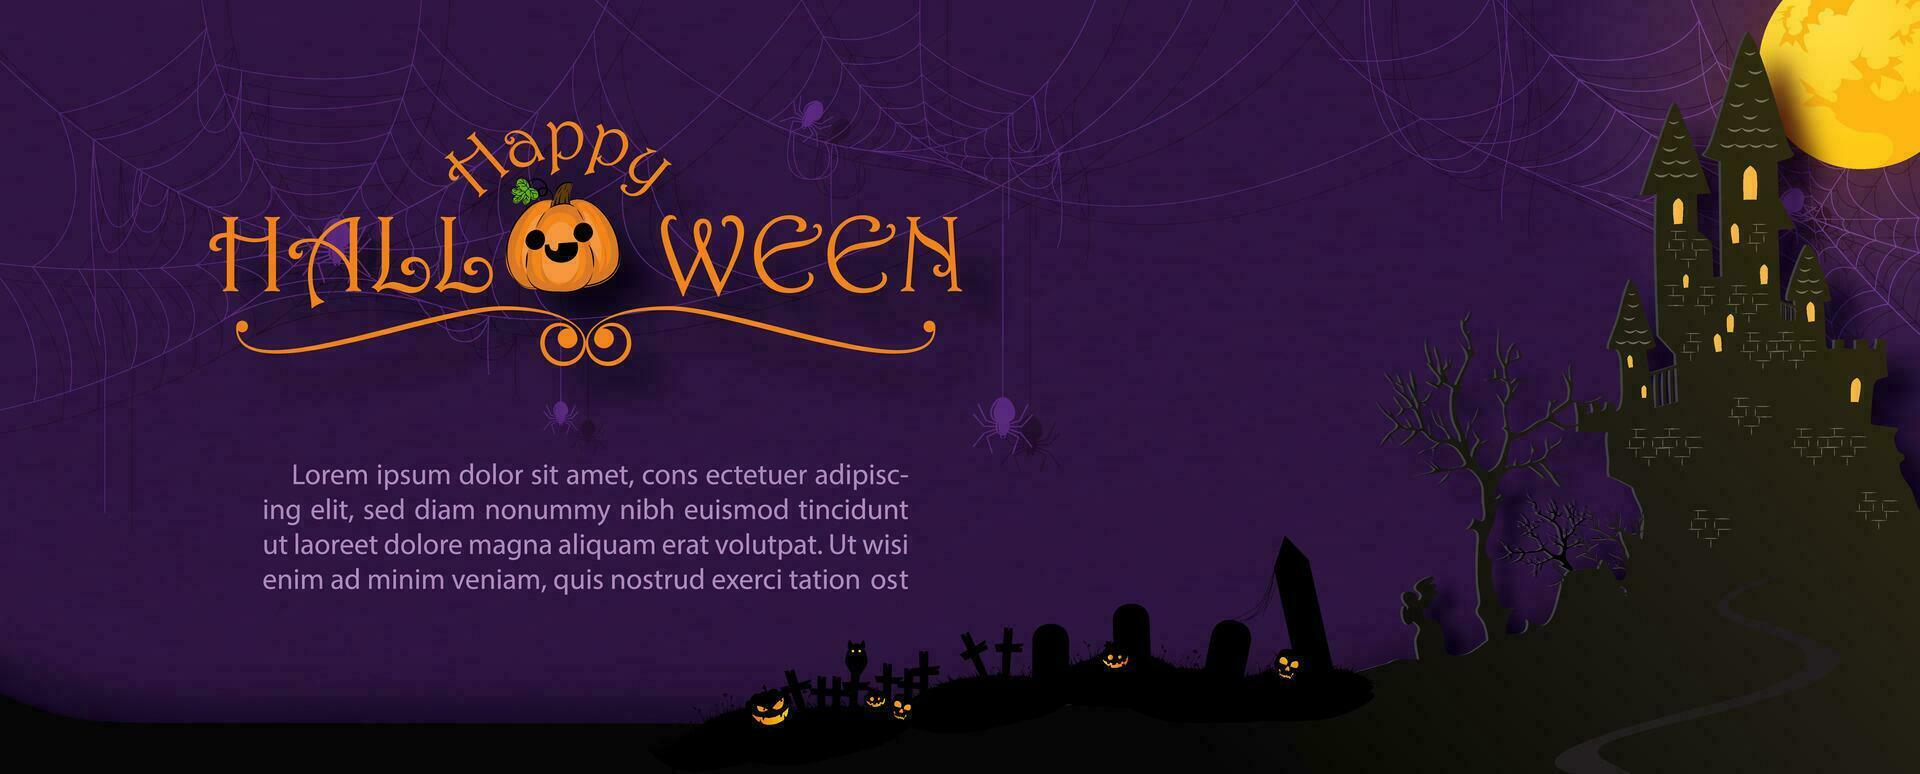 Silhouette Geist Schloss im Halloween Atmosphäre mit im Papier Schnitt Stil und Beispiel Texte auf dunkel lila Hintergrund. alle im Vektor Design.